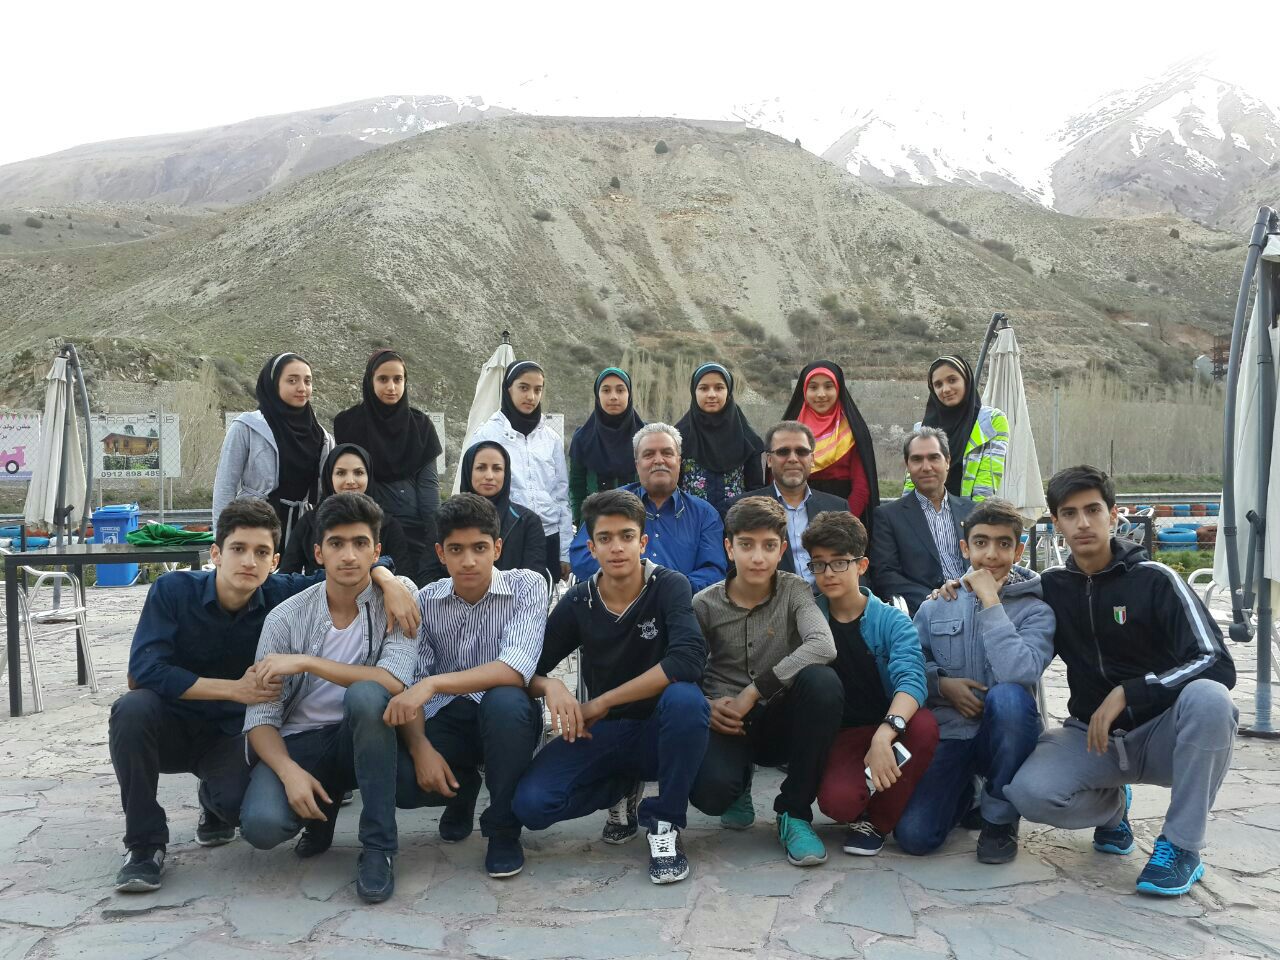 تهران میزبان ملی پوشان پومسه رو اعزامی به مسابقات قهرمانی آسیا